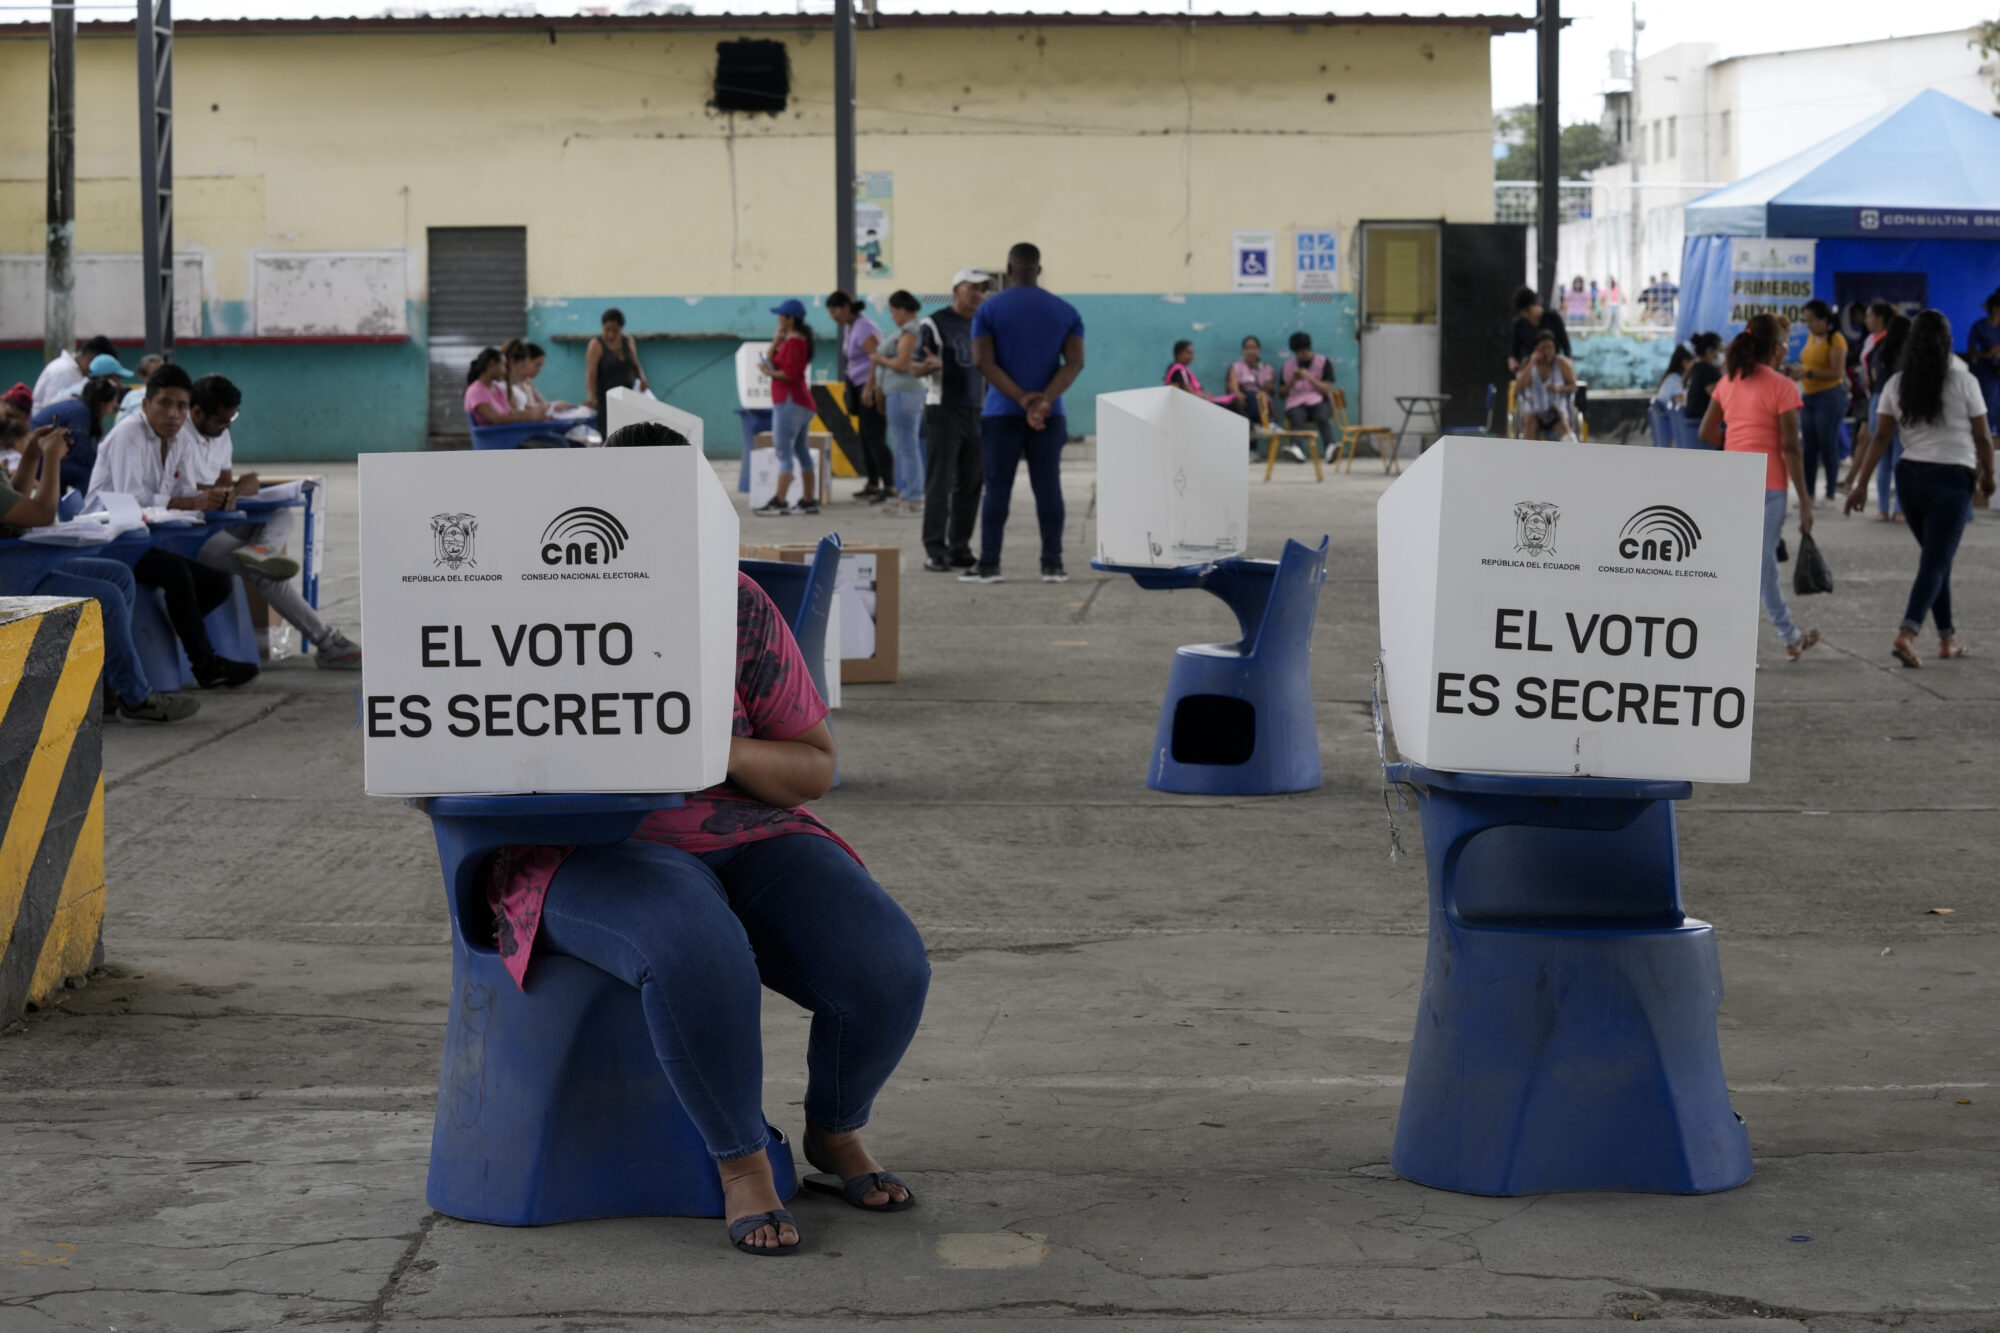 Stemmebokser i ei lokale med teksta "El voto es secreto"